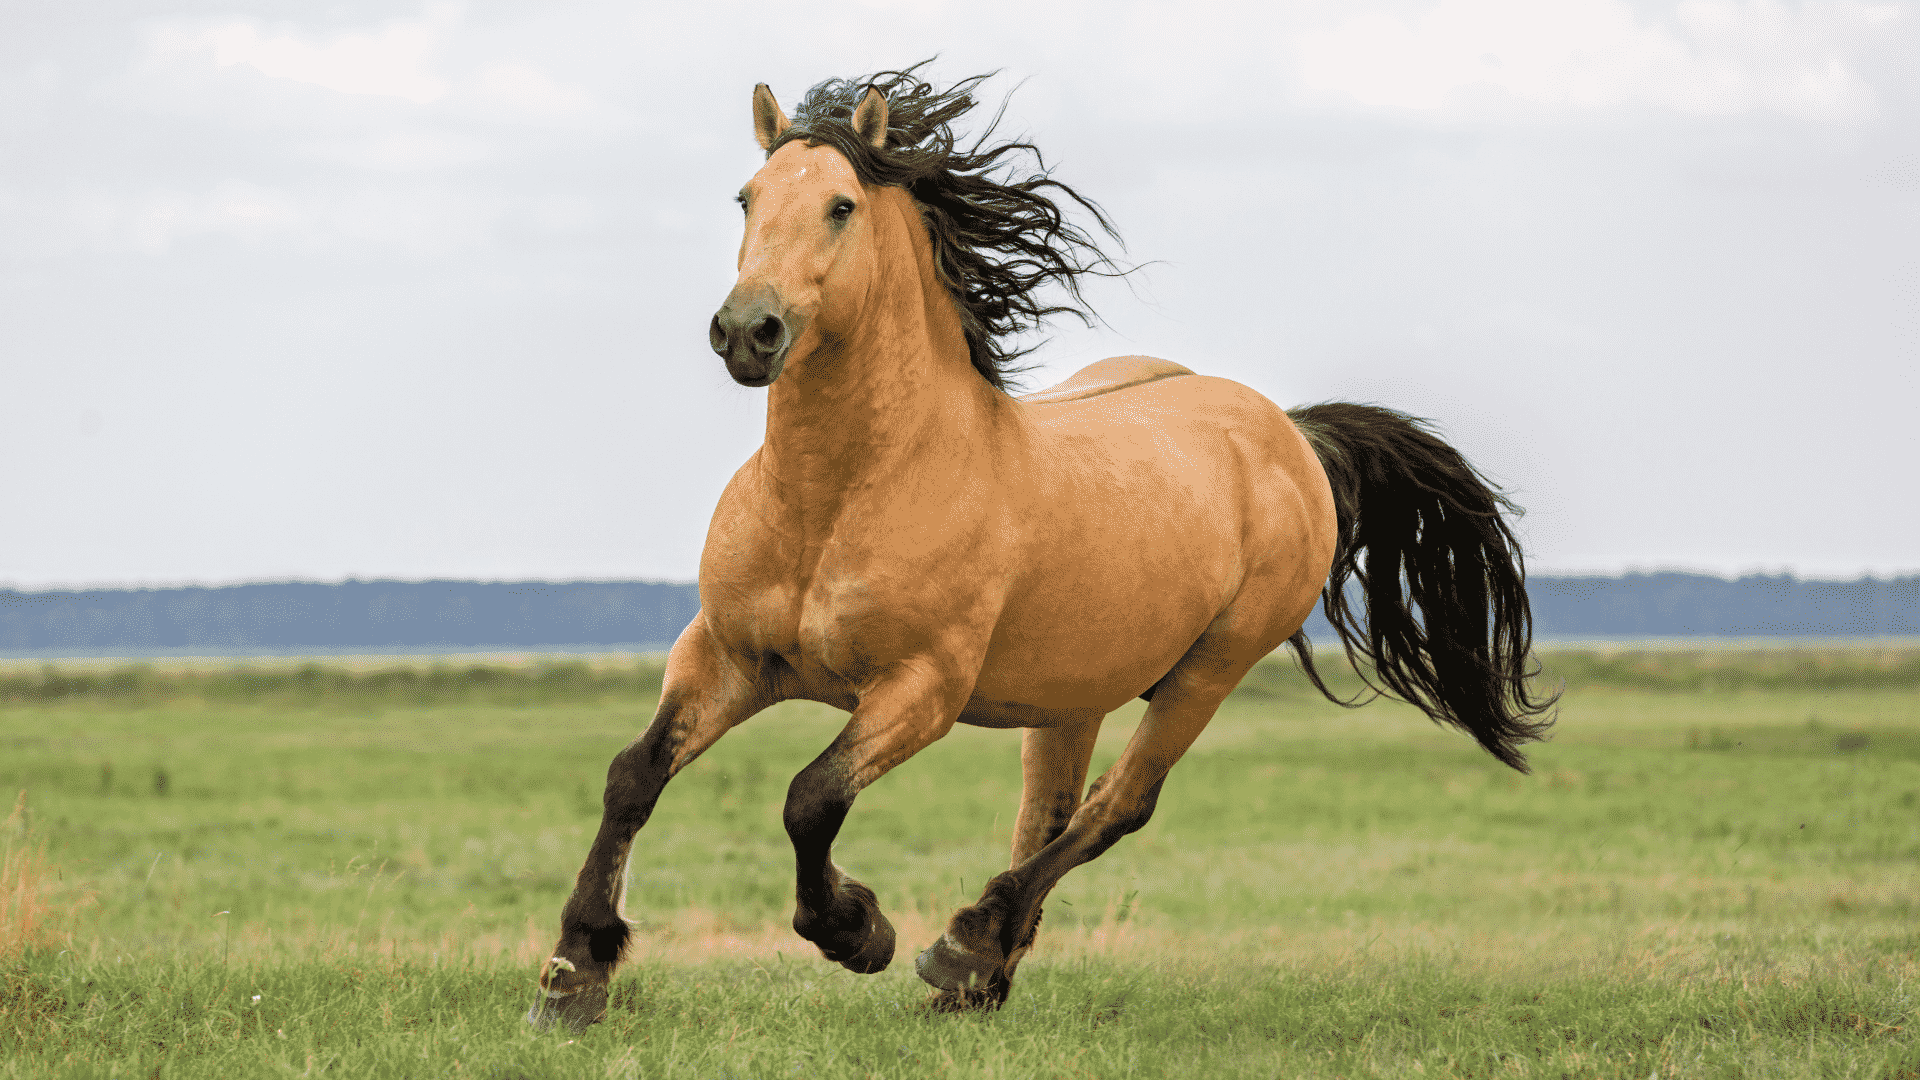 Sonhar Com Cavalo - Quais os Significados? O Que Quer Dizer?